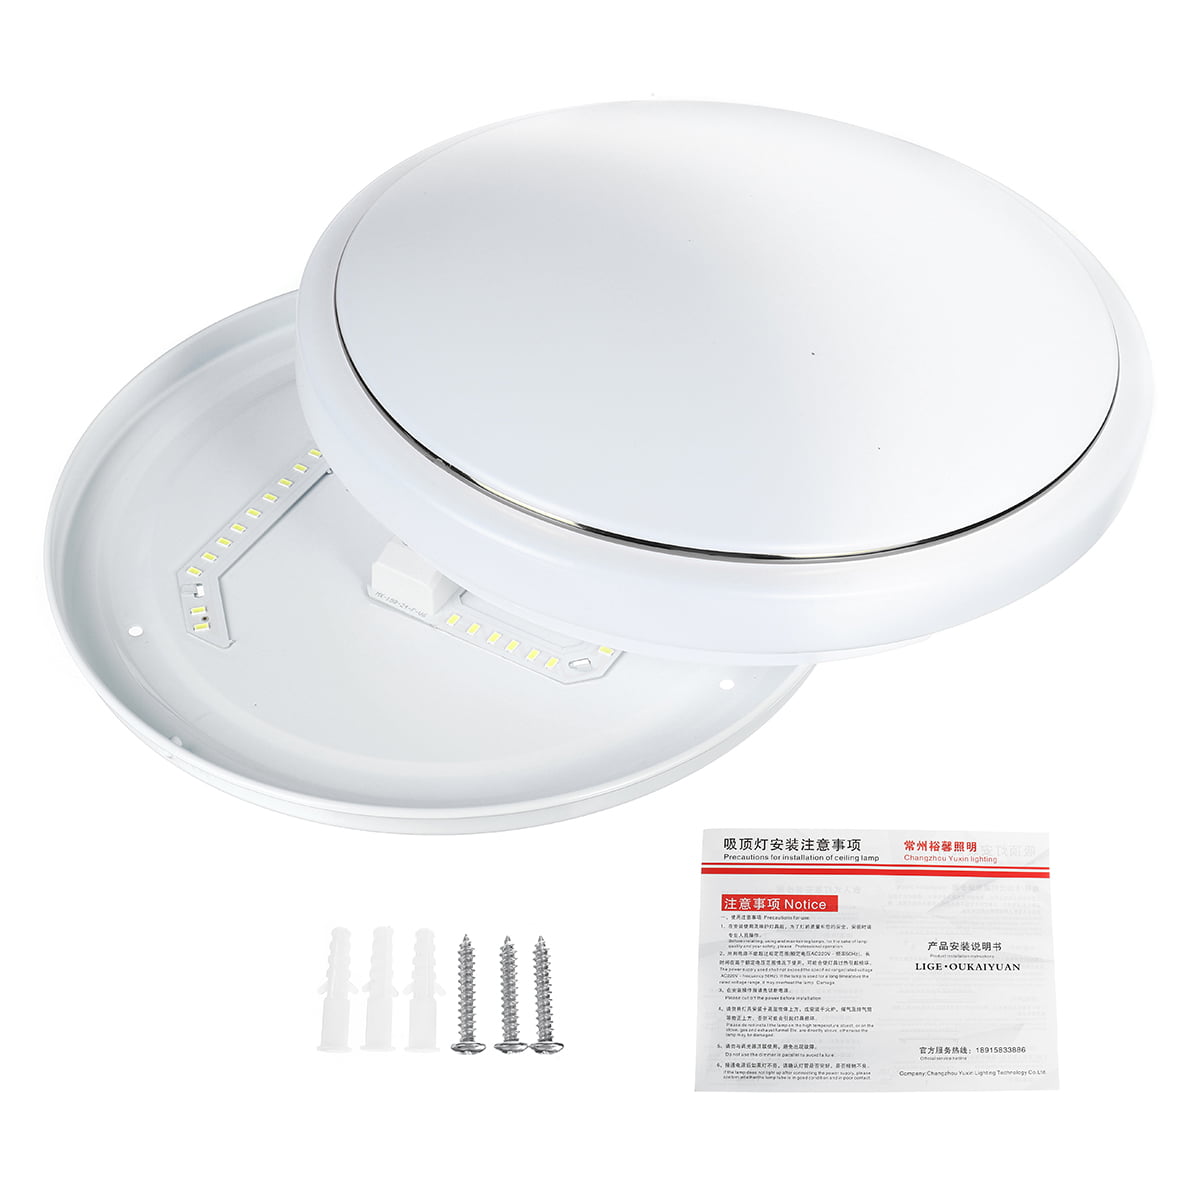 6000K Cool White LED Ceiling Light Flush Mounted Kitchen Living Bathroom Lamp 